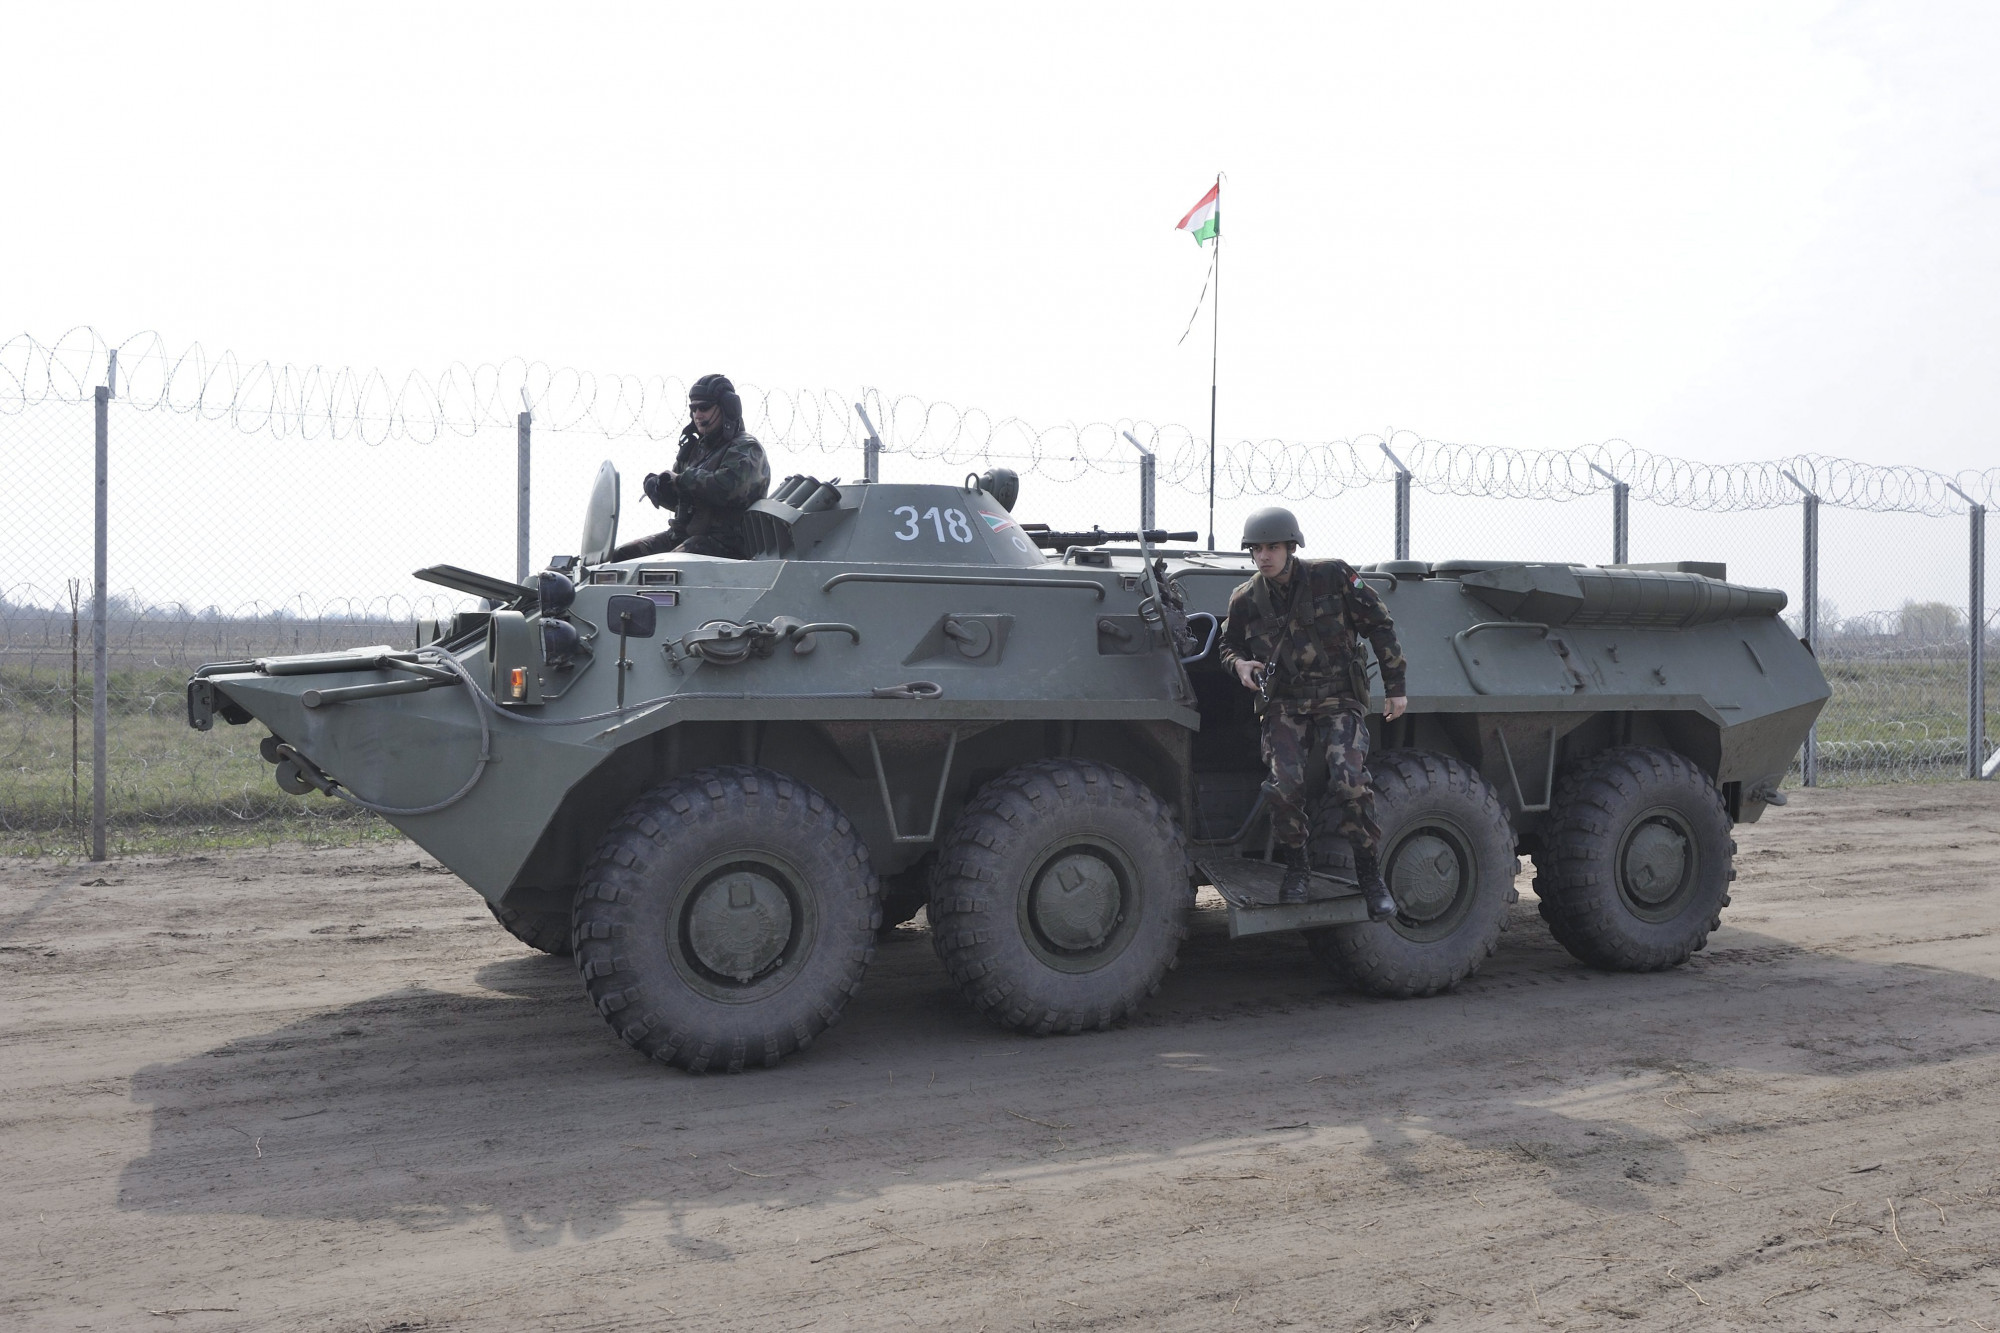 A magyar honvédség Szerbiának passzolja le a kiszuperált orosz harcjárműveit